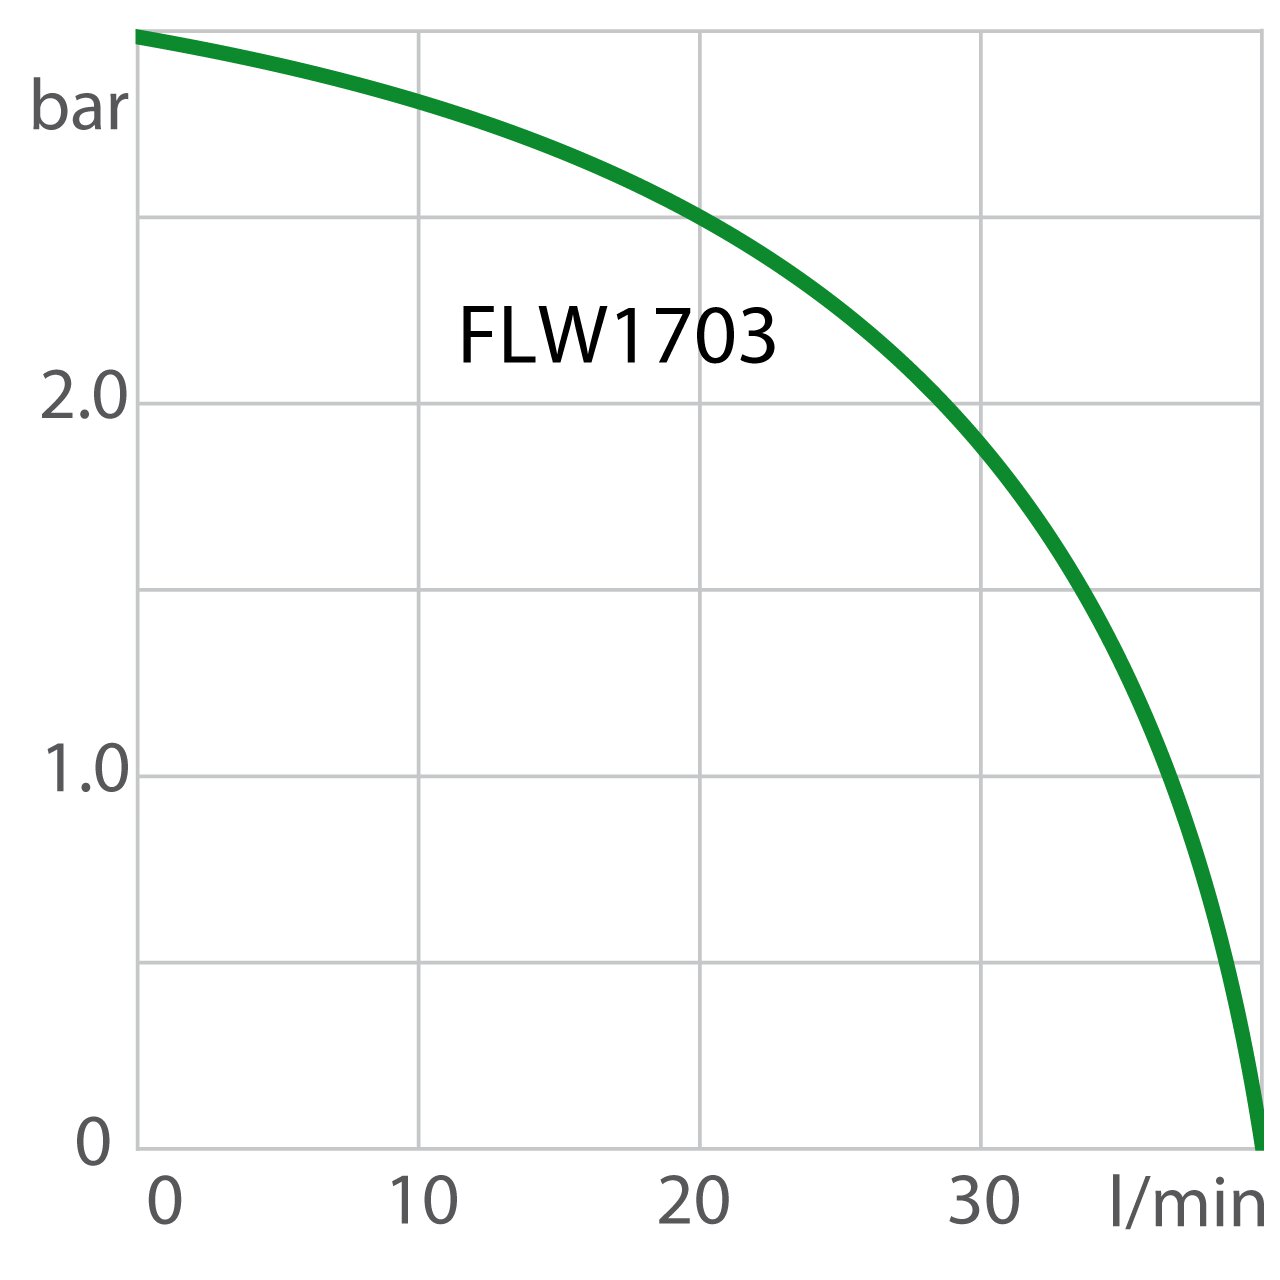 Pump capacity recirculating cooler FLW1703